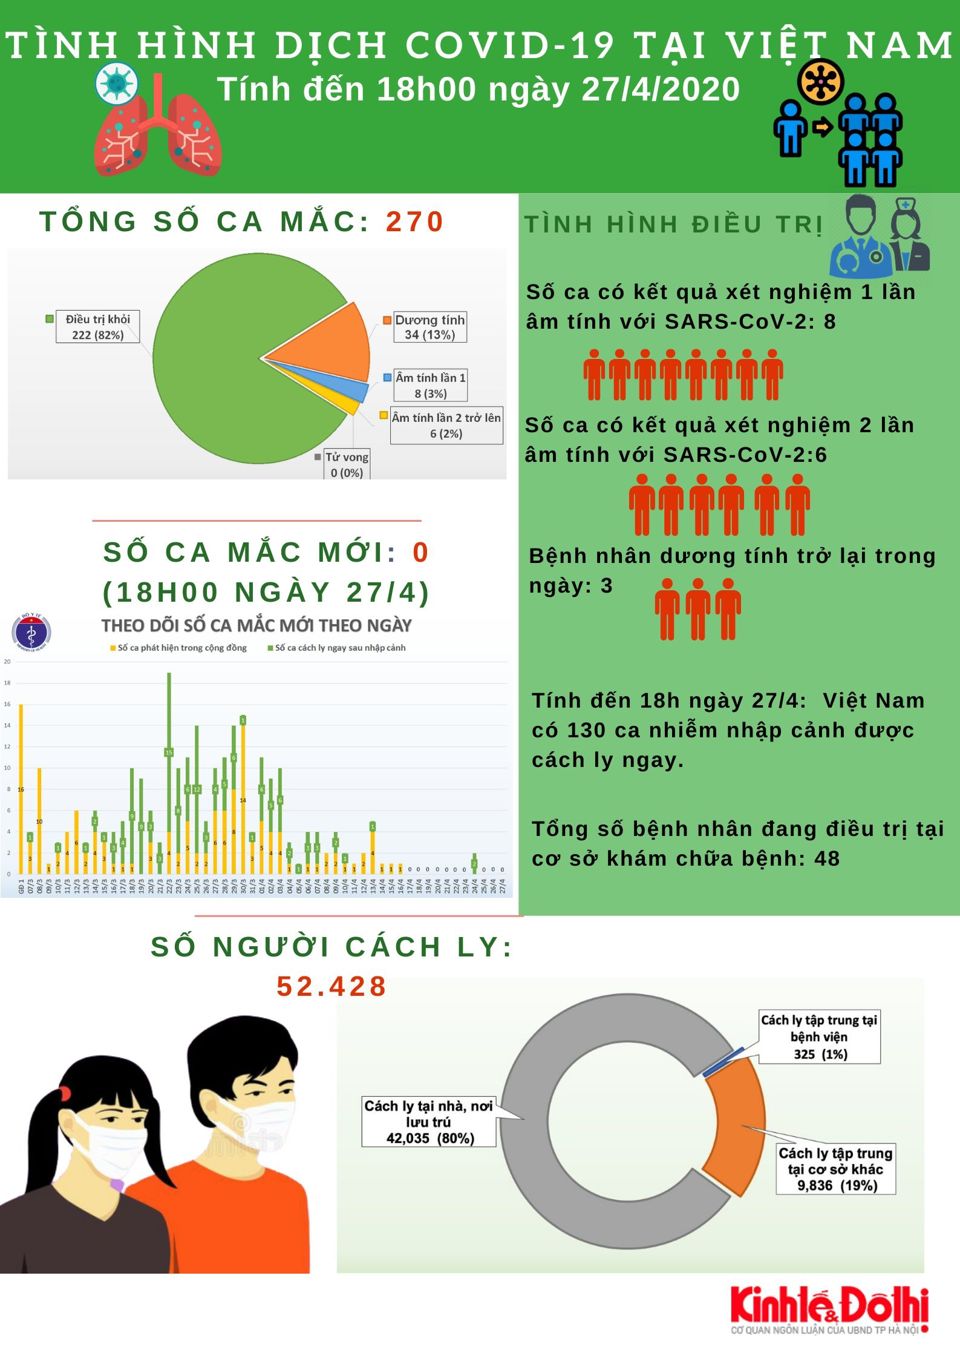 [Infographic] 11 ngày liên tiếp Việt Nam không có ca lây nhiễm trong cộng đồng - Ảnh 1